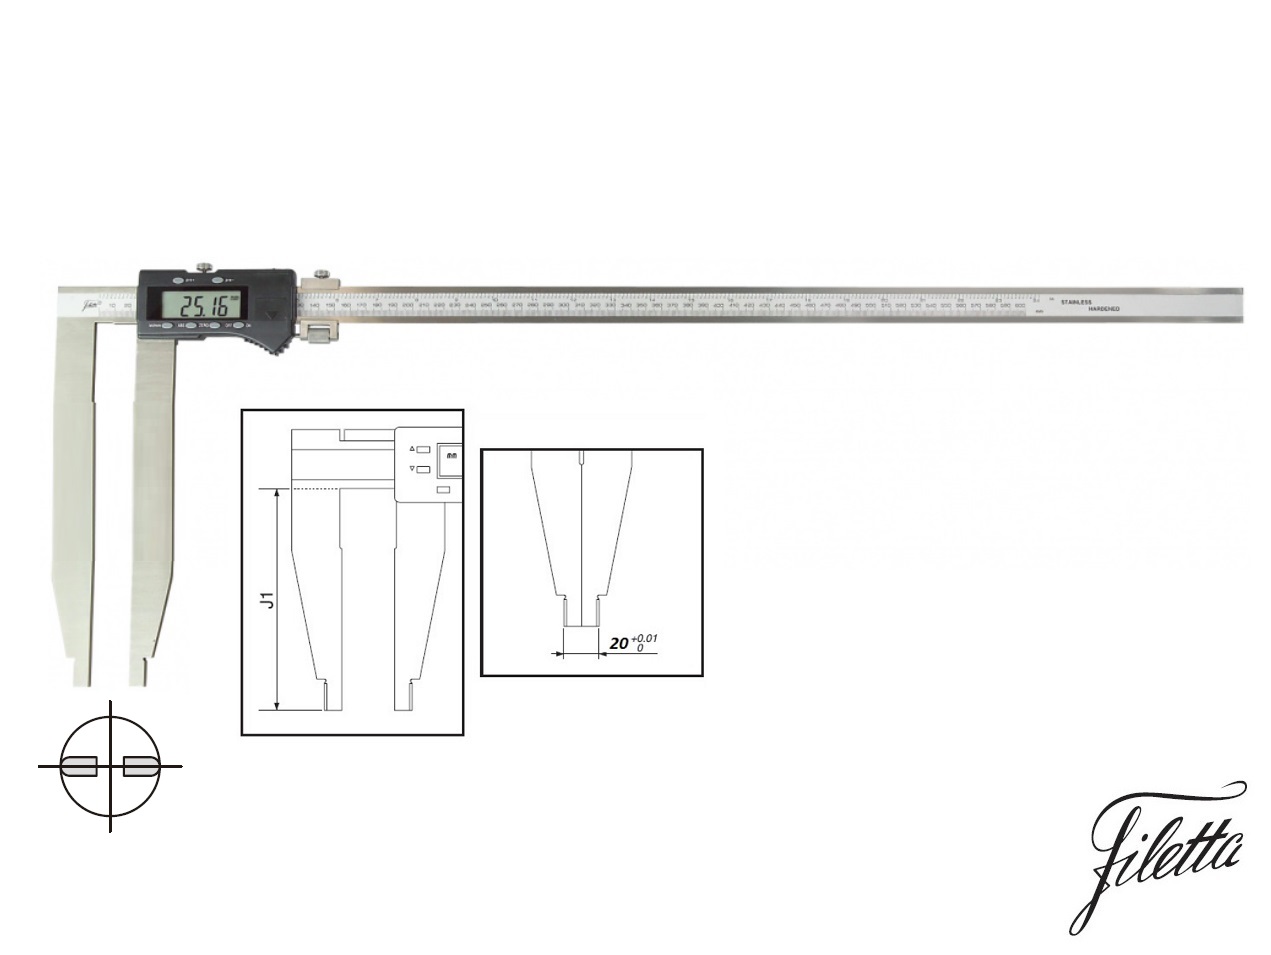 Digitální posuvné měřítko Filetta 0-500 mm bez nožíků, s měřicími čelistmi 250 mm 